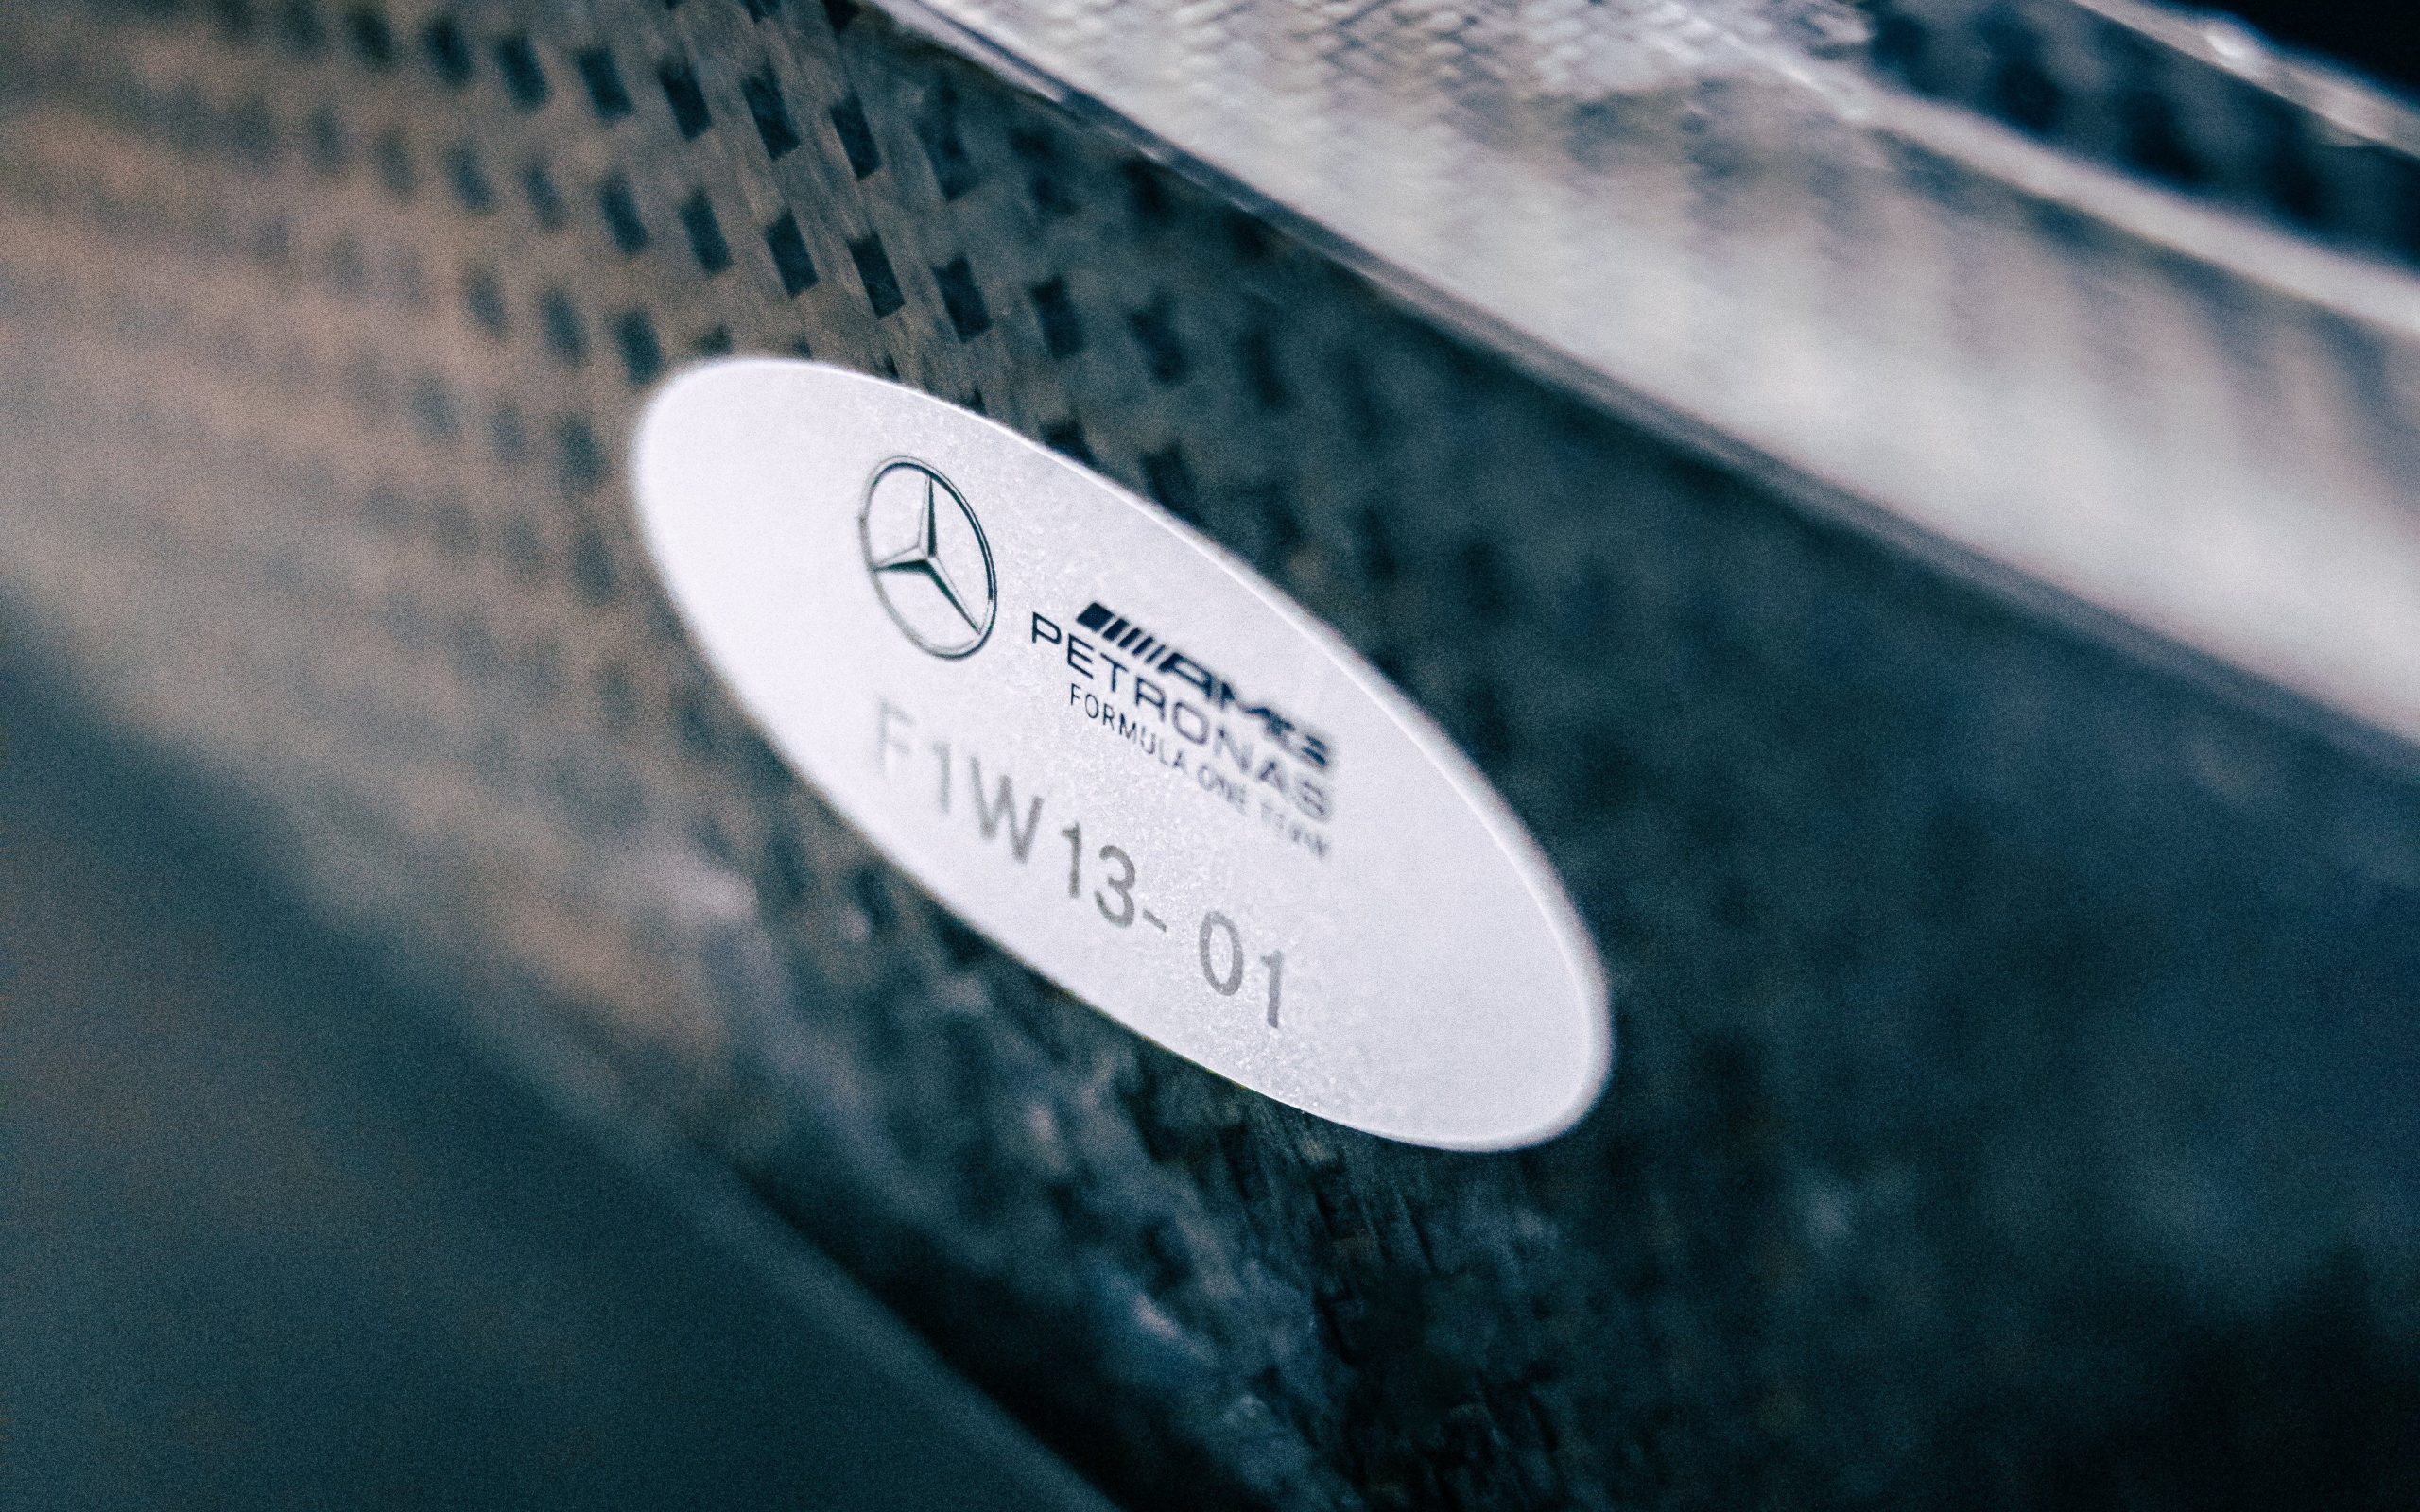 Mercedes omologata, pronta per la nuova stagione.